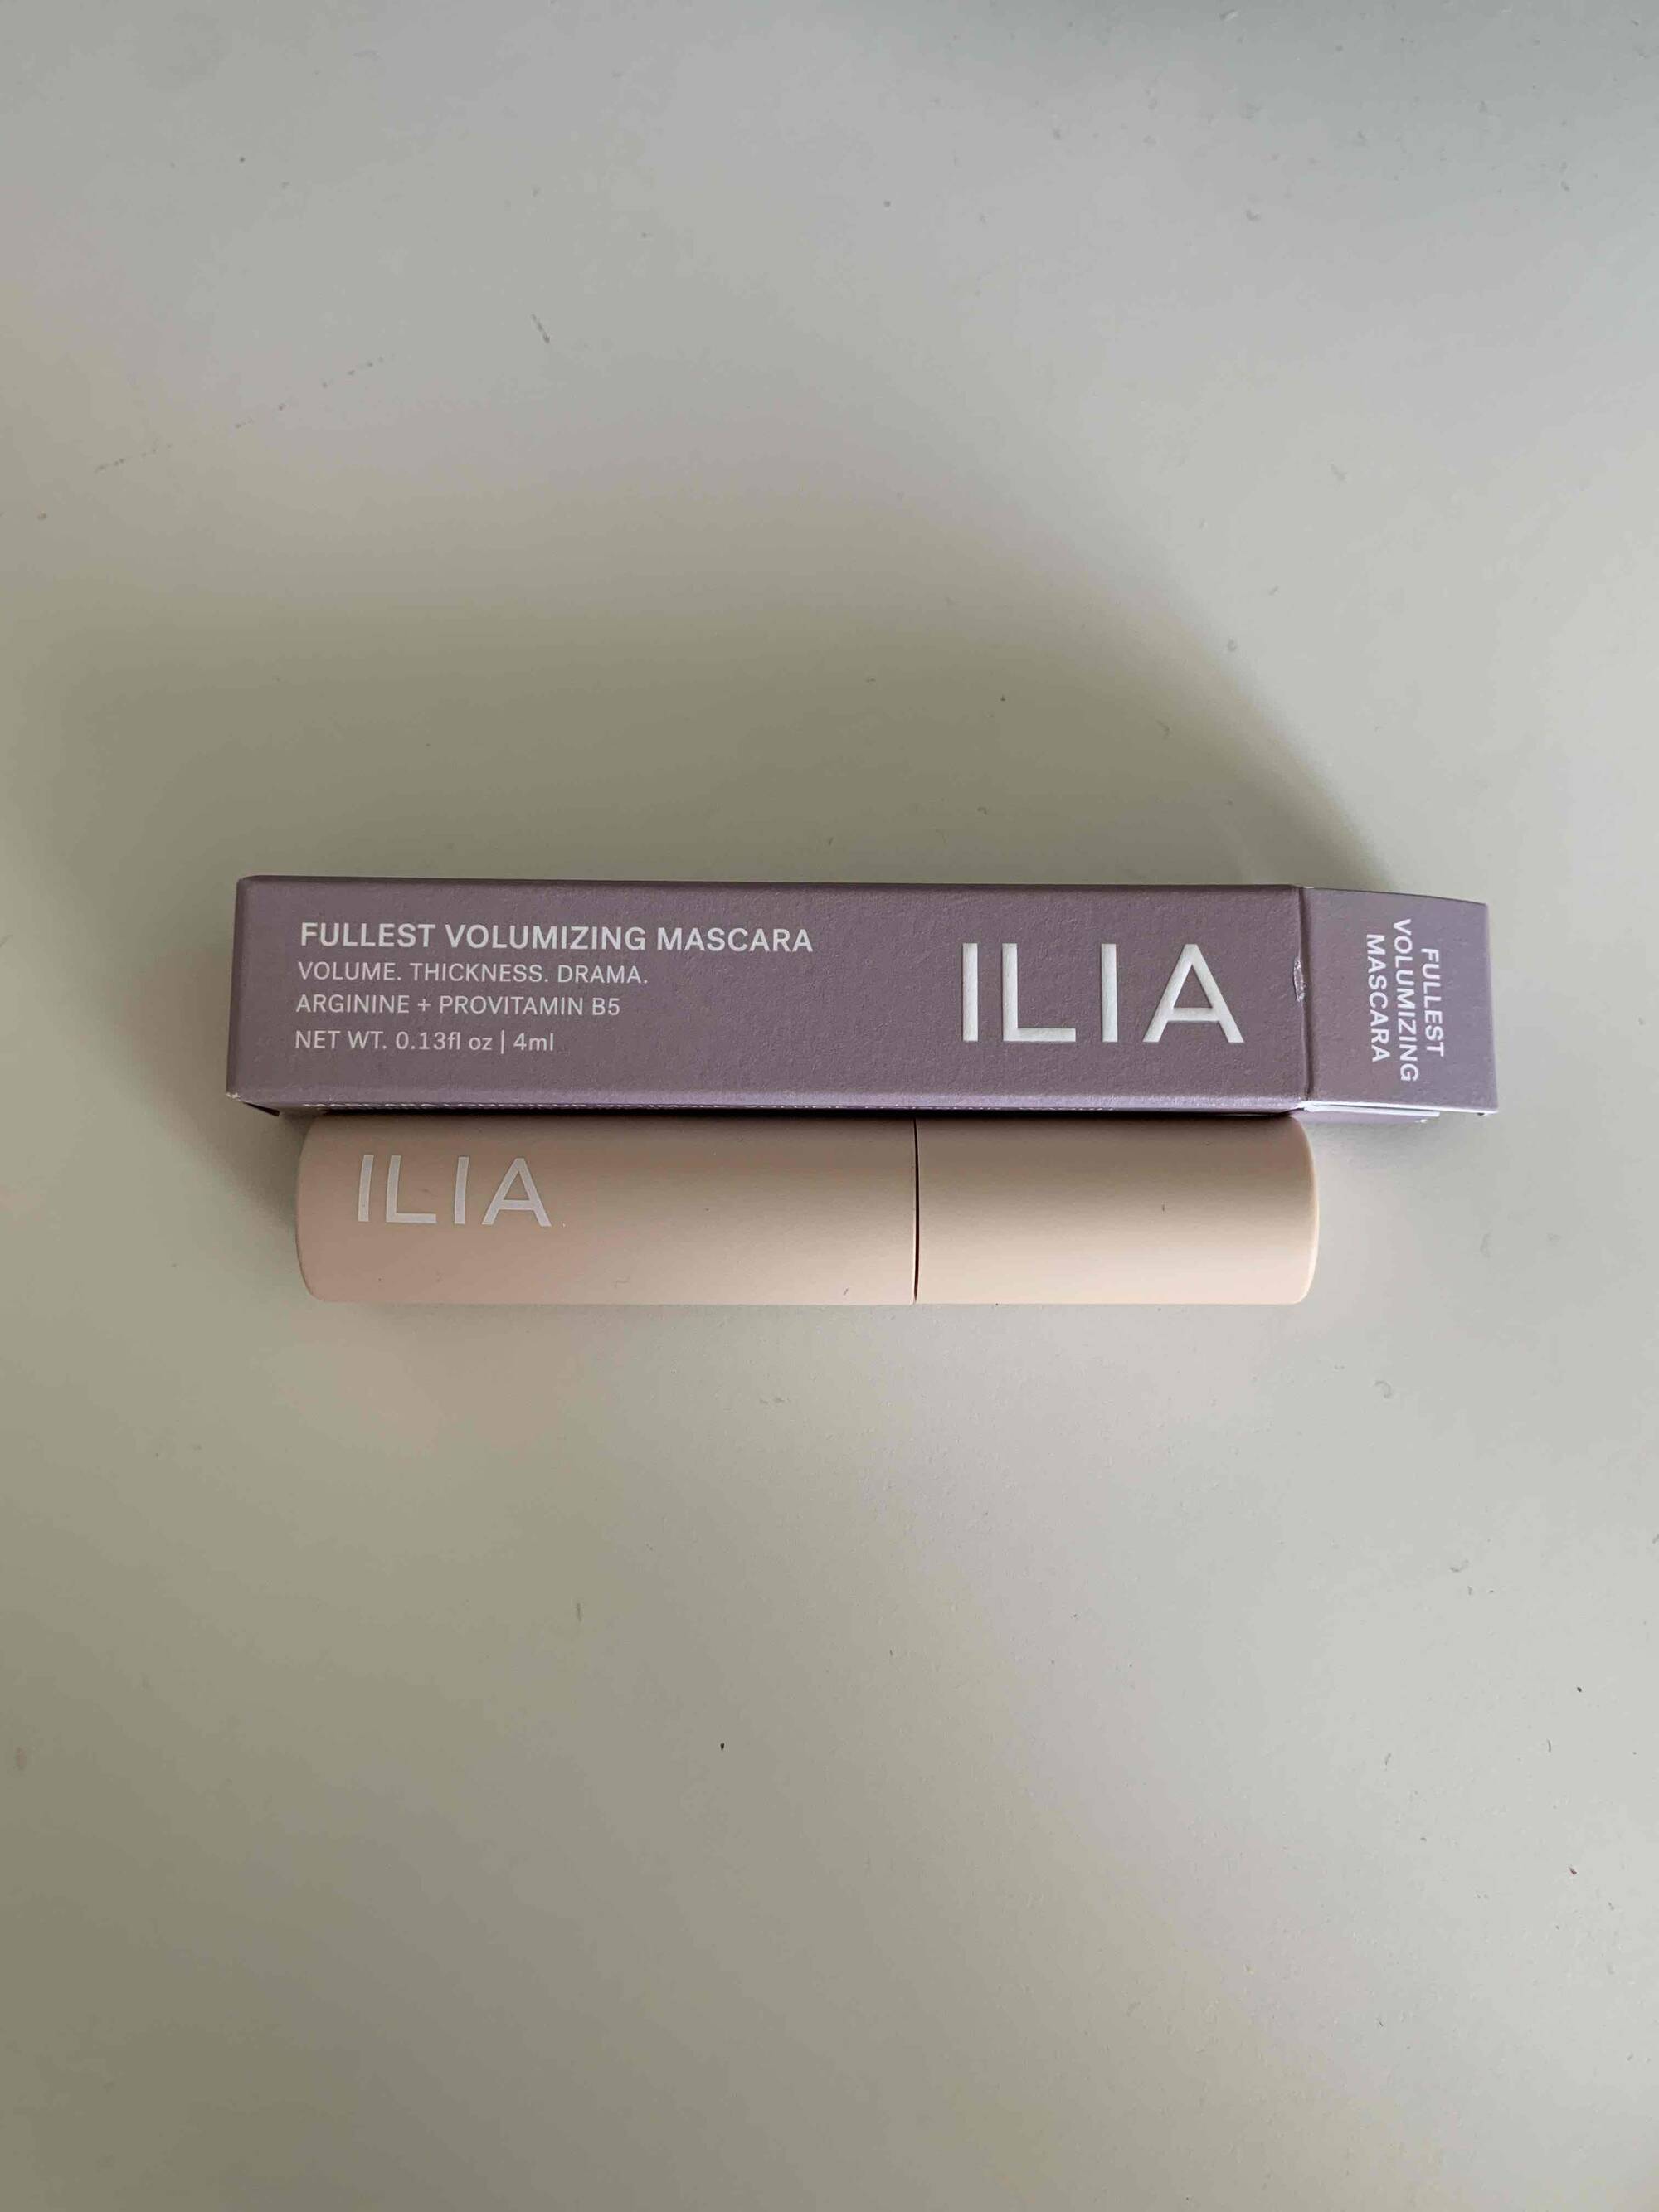 ILIA - Fullest volumizing mascara